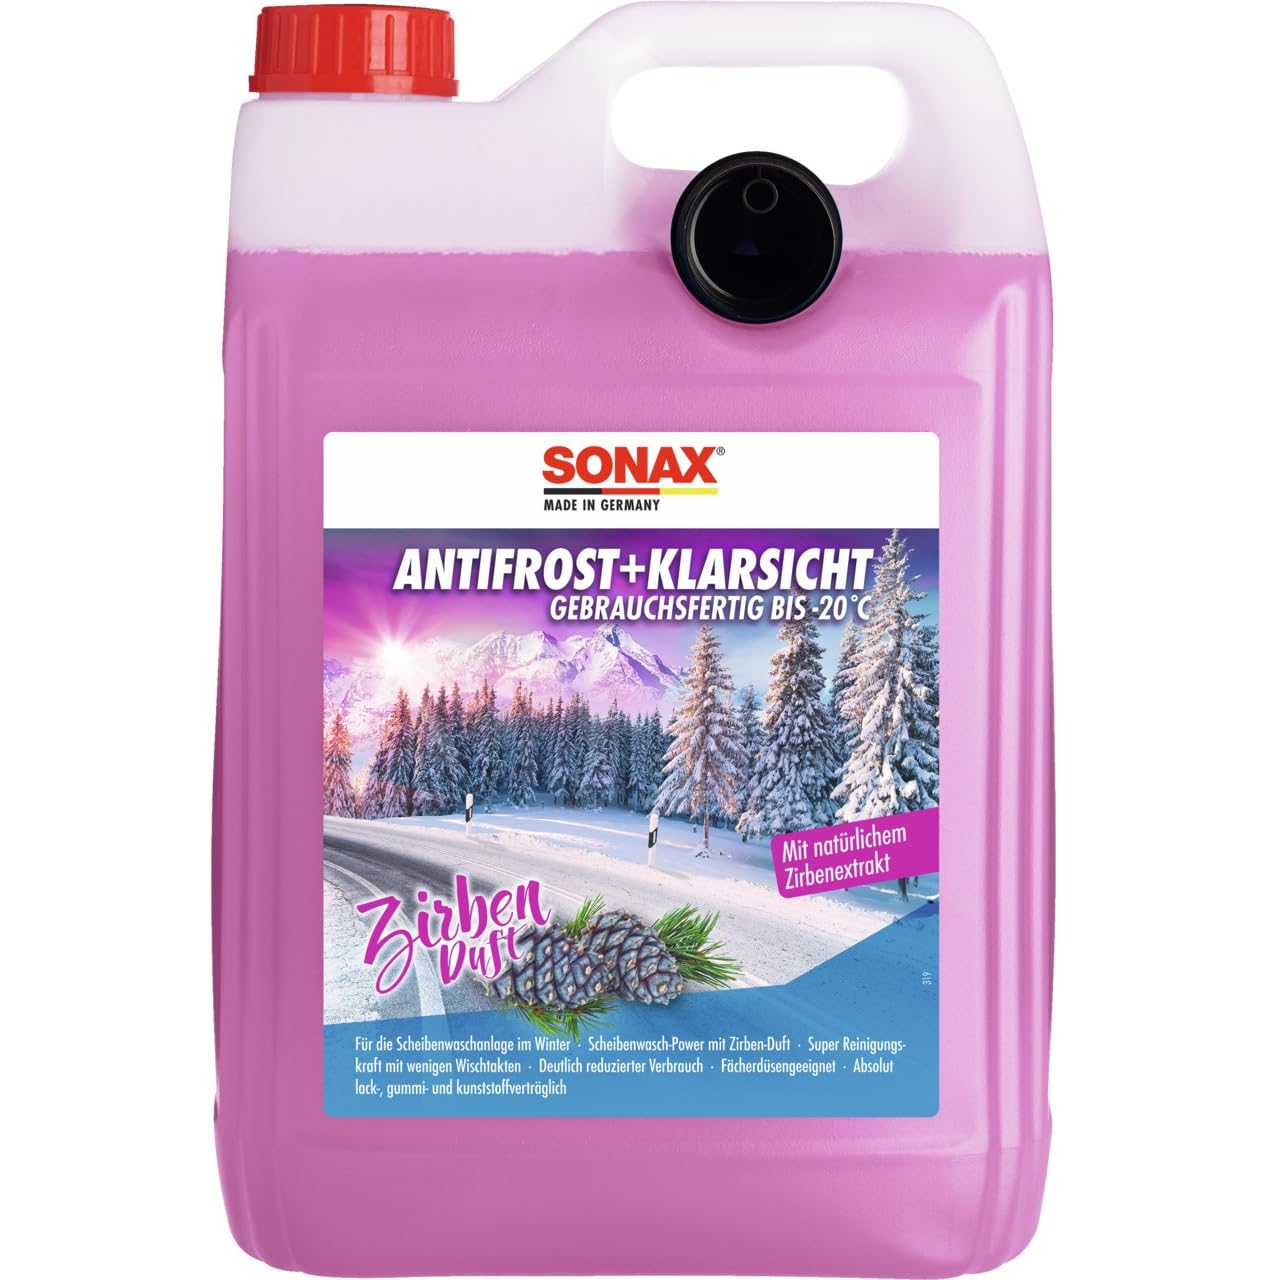 SONAX AntiFrost+KlarSicht Zirbe Gebrauchsfertig bis -20°C (5 Liter) schneller, schlierenfreier & effektiver Scheibenreiniger für den Winter | Art-Nr. 01315000 von SONAX